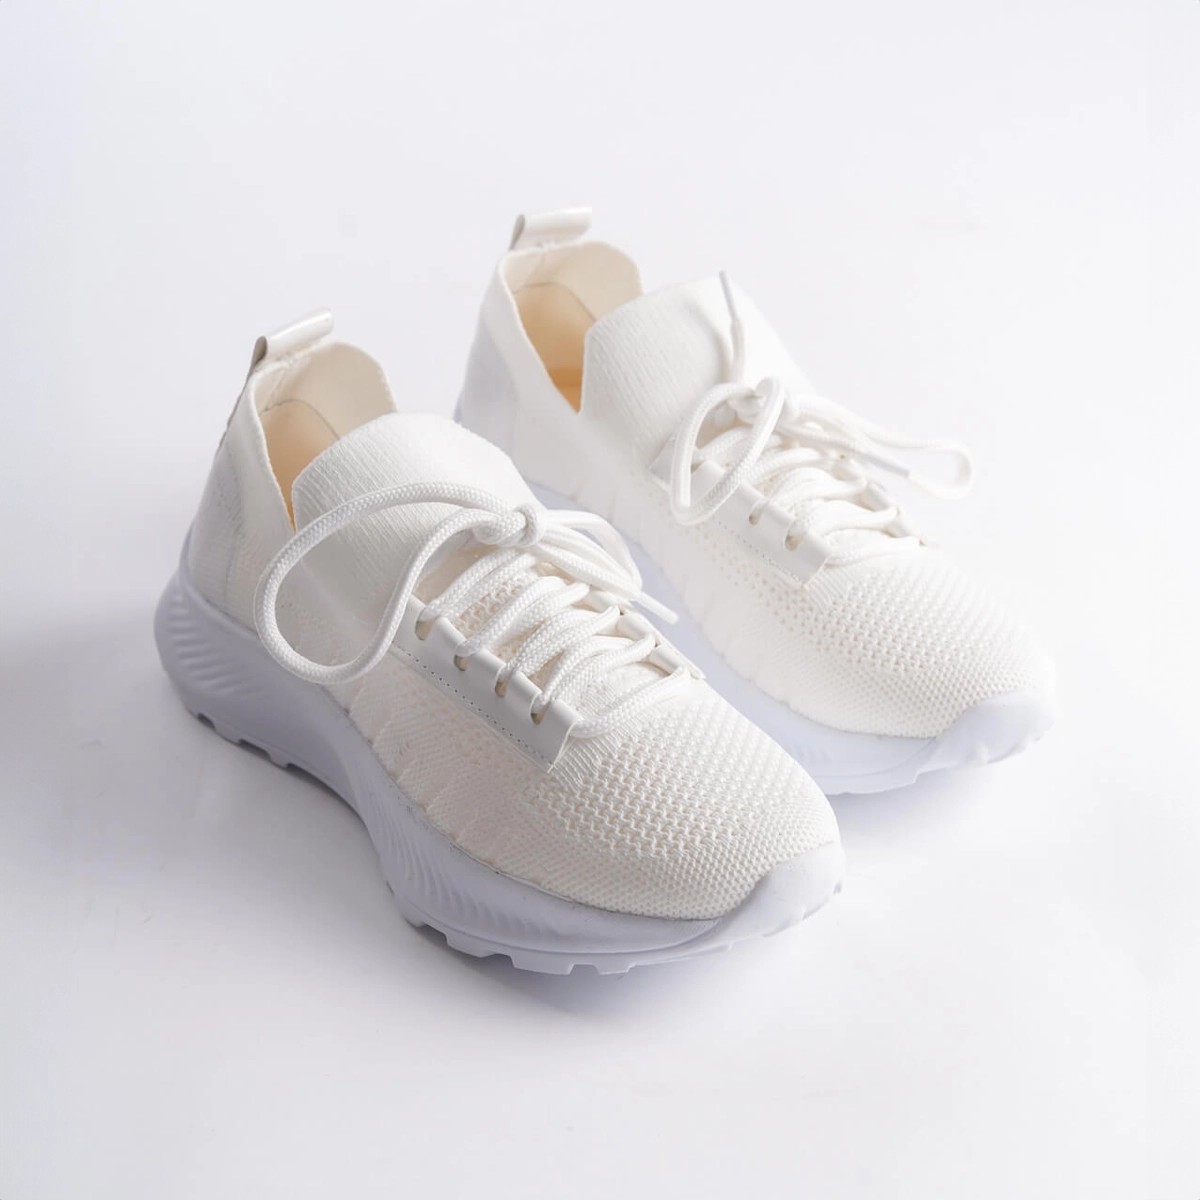 Tekstil Sneaker Spor Ayakkabı - Beyaz